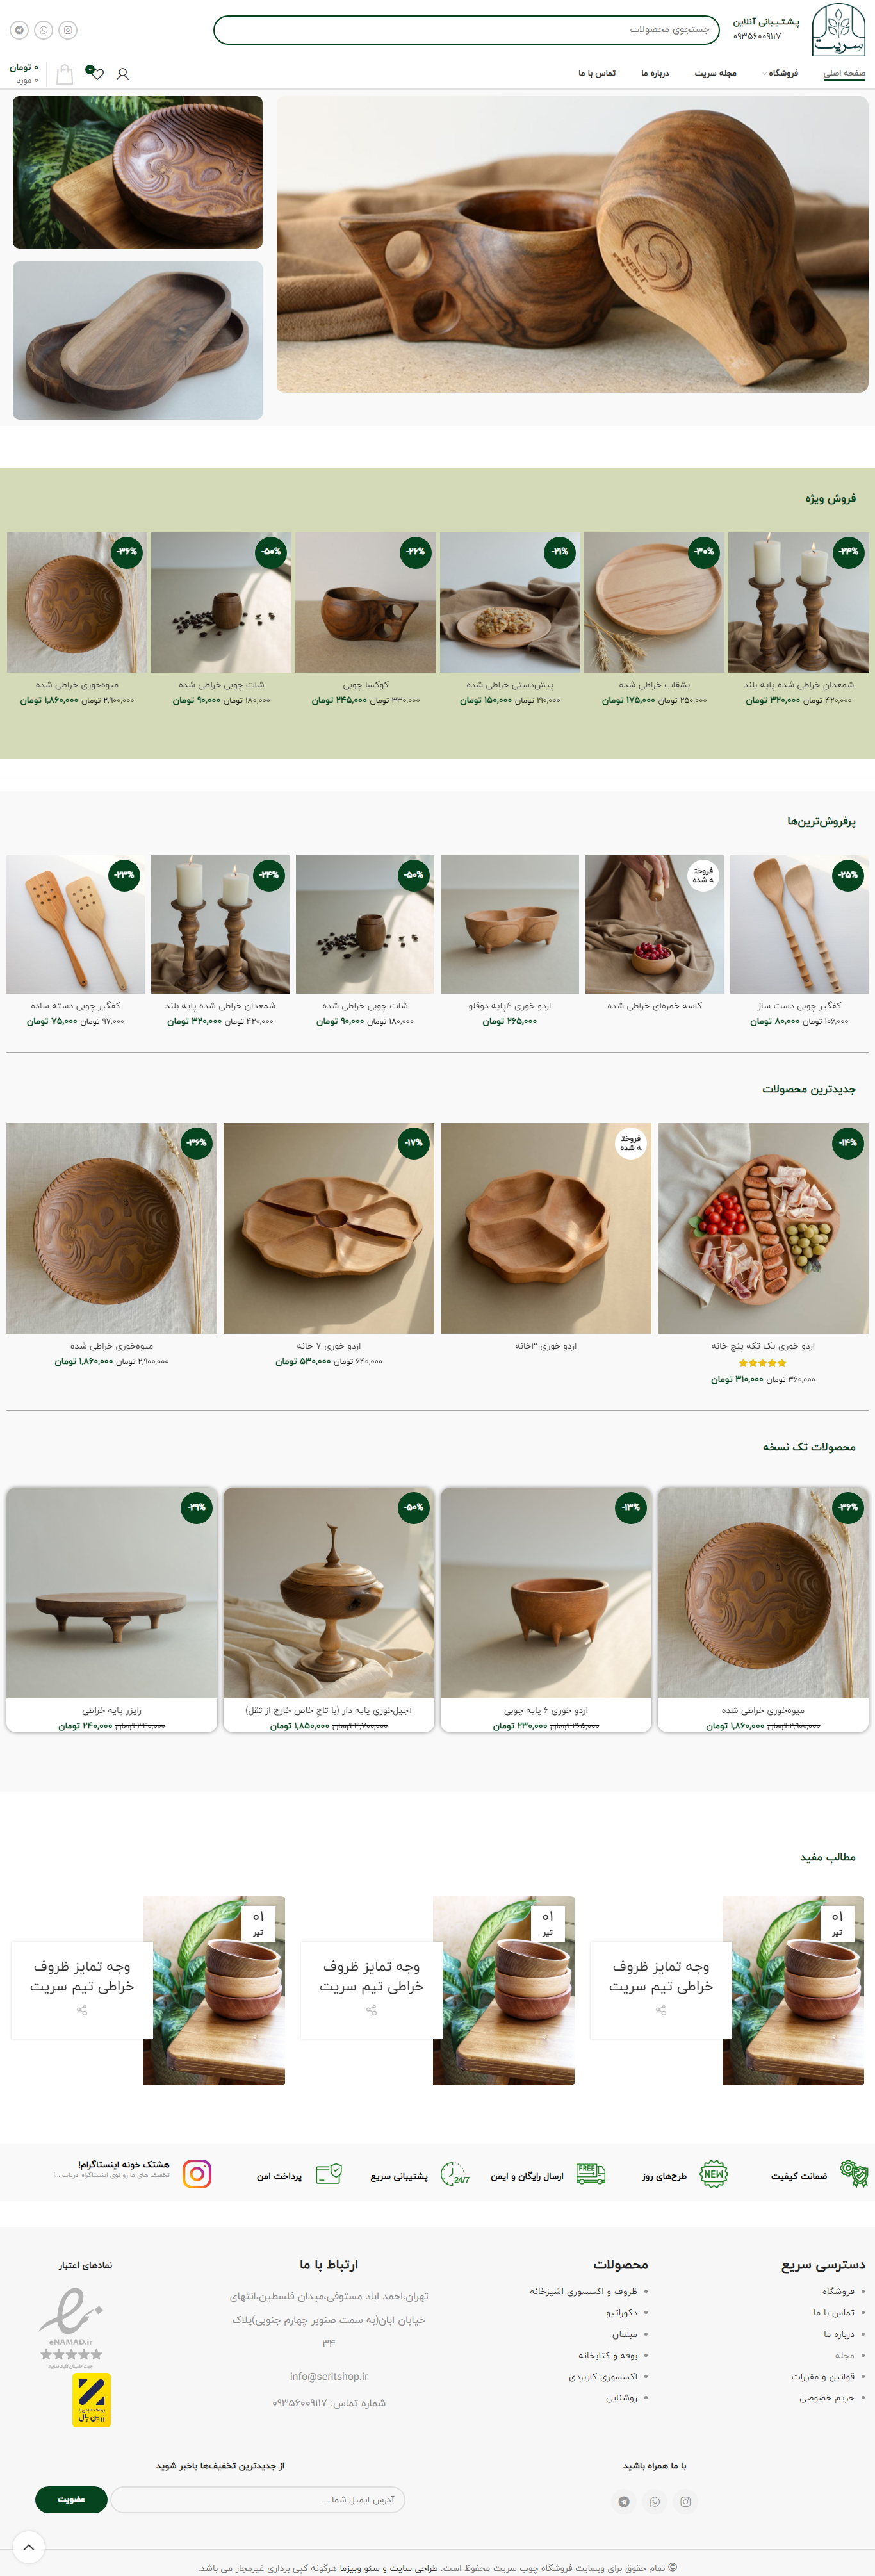 نمونه طراحی سایت ظروف و دکوراسیون چوبی